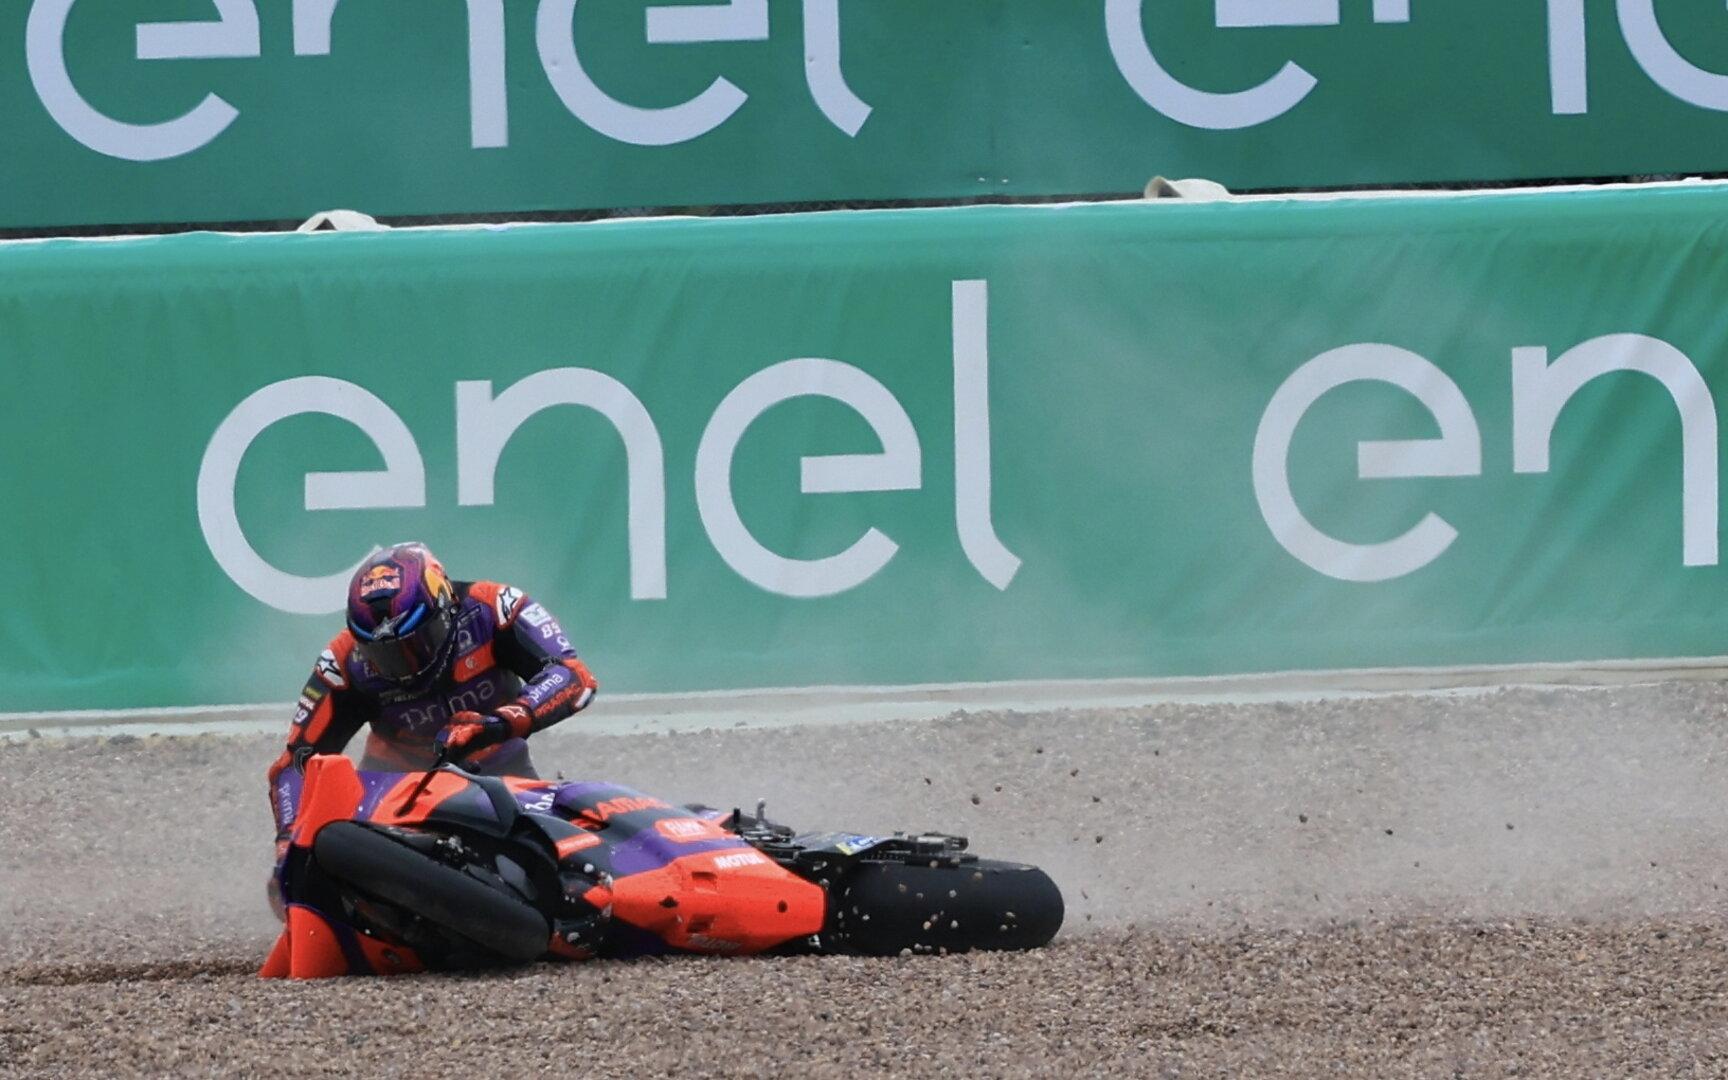 MotoGP-Drama: Im Kiesbett liegt es sich nicht gut – Martin warf Sieg weg